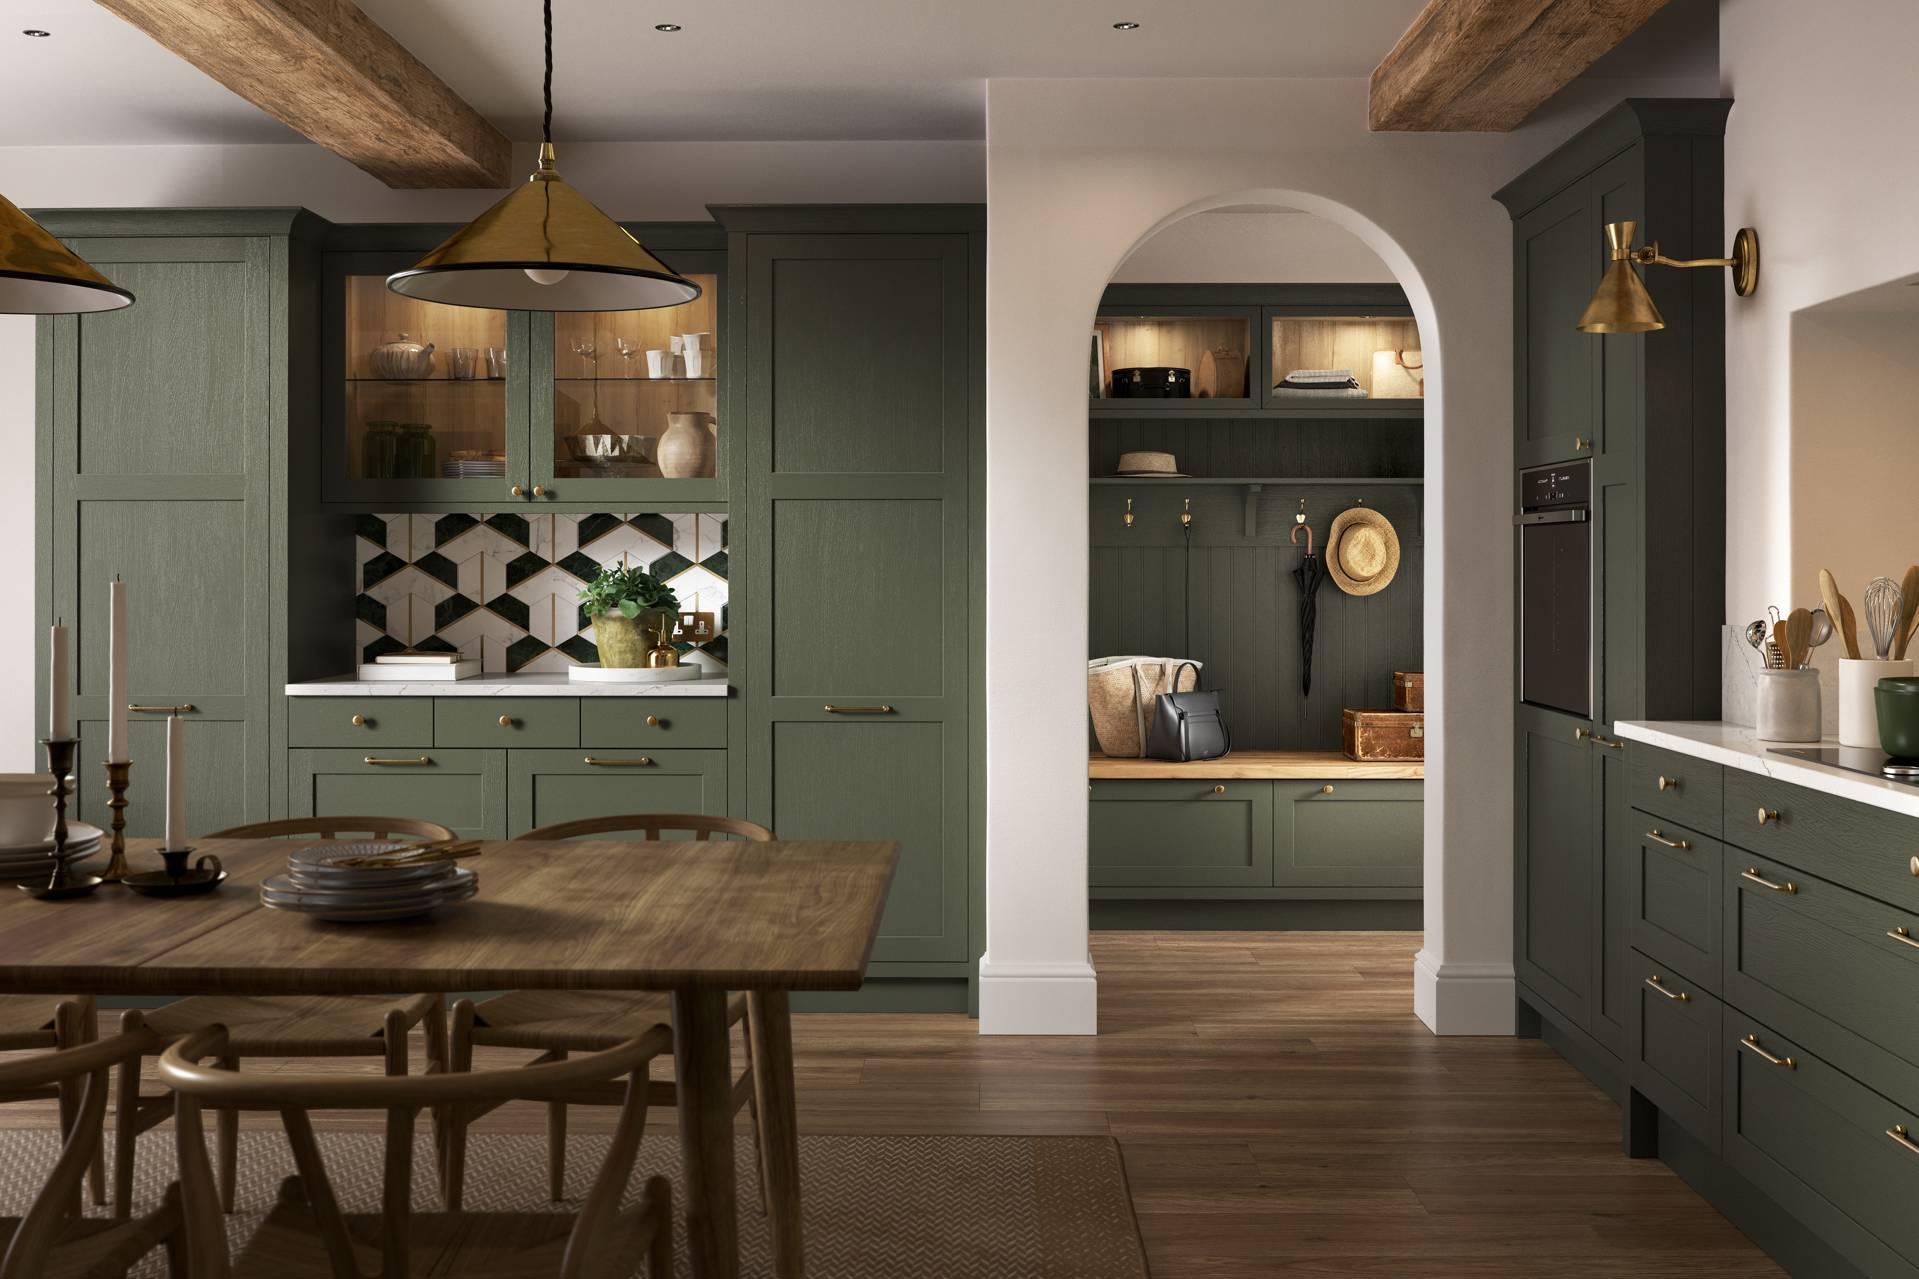 Gabinetes de cocina de madera maciza lacados en verde oscuro de alta calidad con tiradores dorados